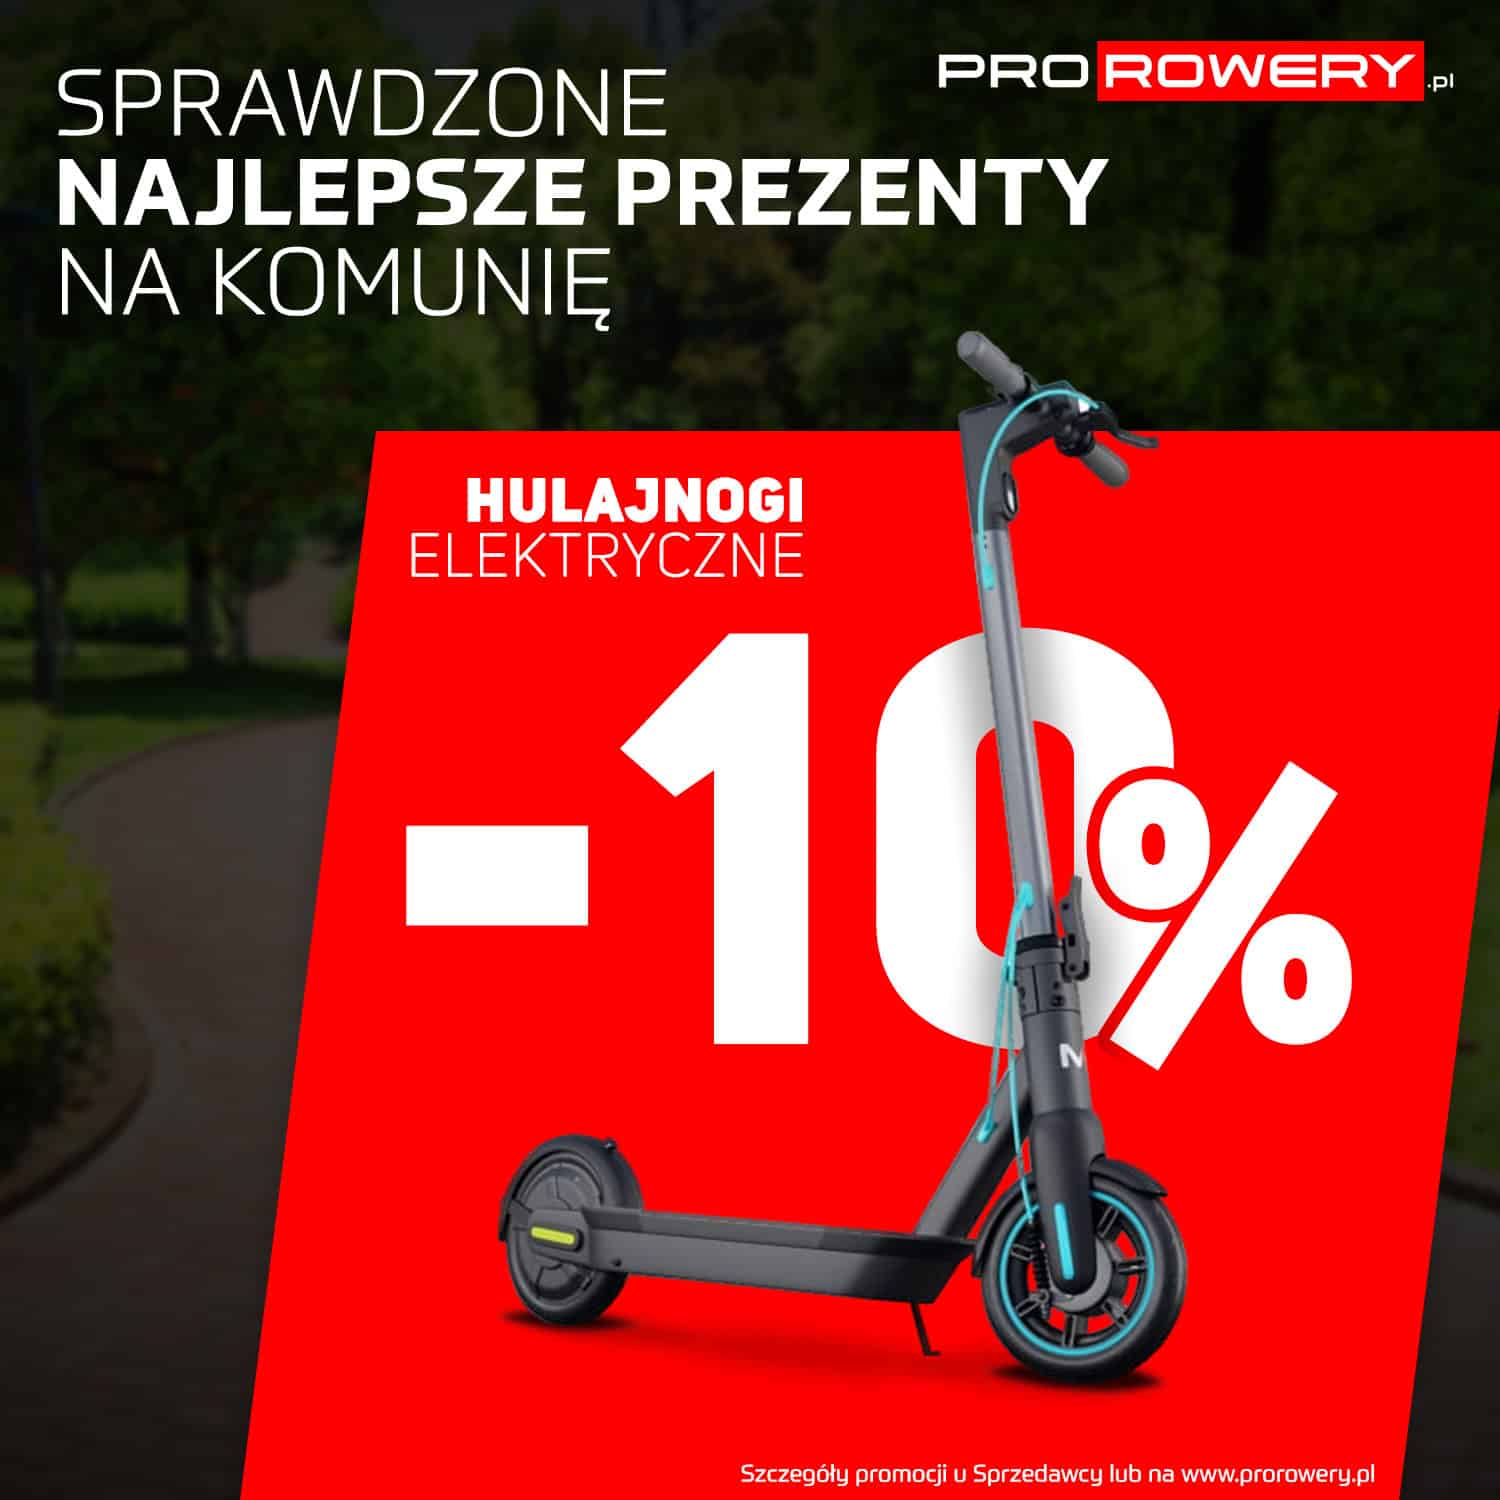 Read more about the article Wypożyczenie e-bike za 1 zł, najlepsze marki rowerowe w ratach RRSO0%, promocje na rowery komunijne. To wszystko w salonie Prorowery.pl w Pyrzycach na ul. Żwirki i Wigury 1